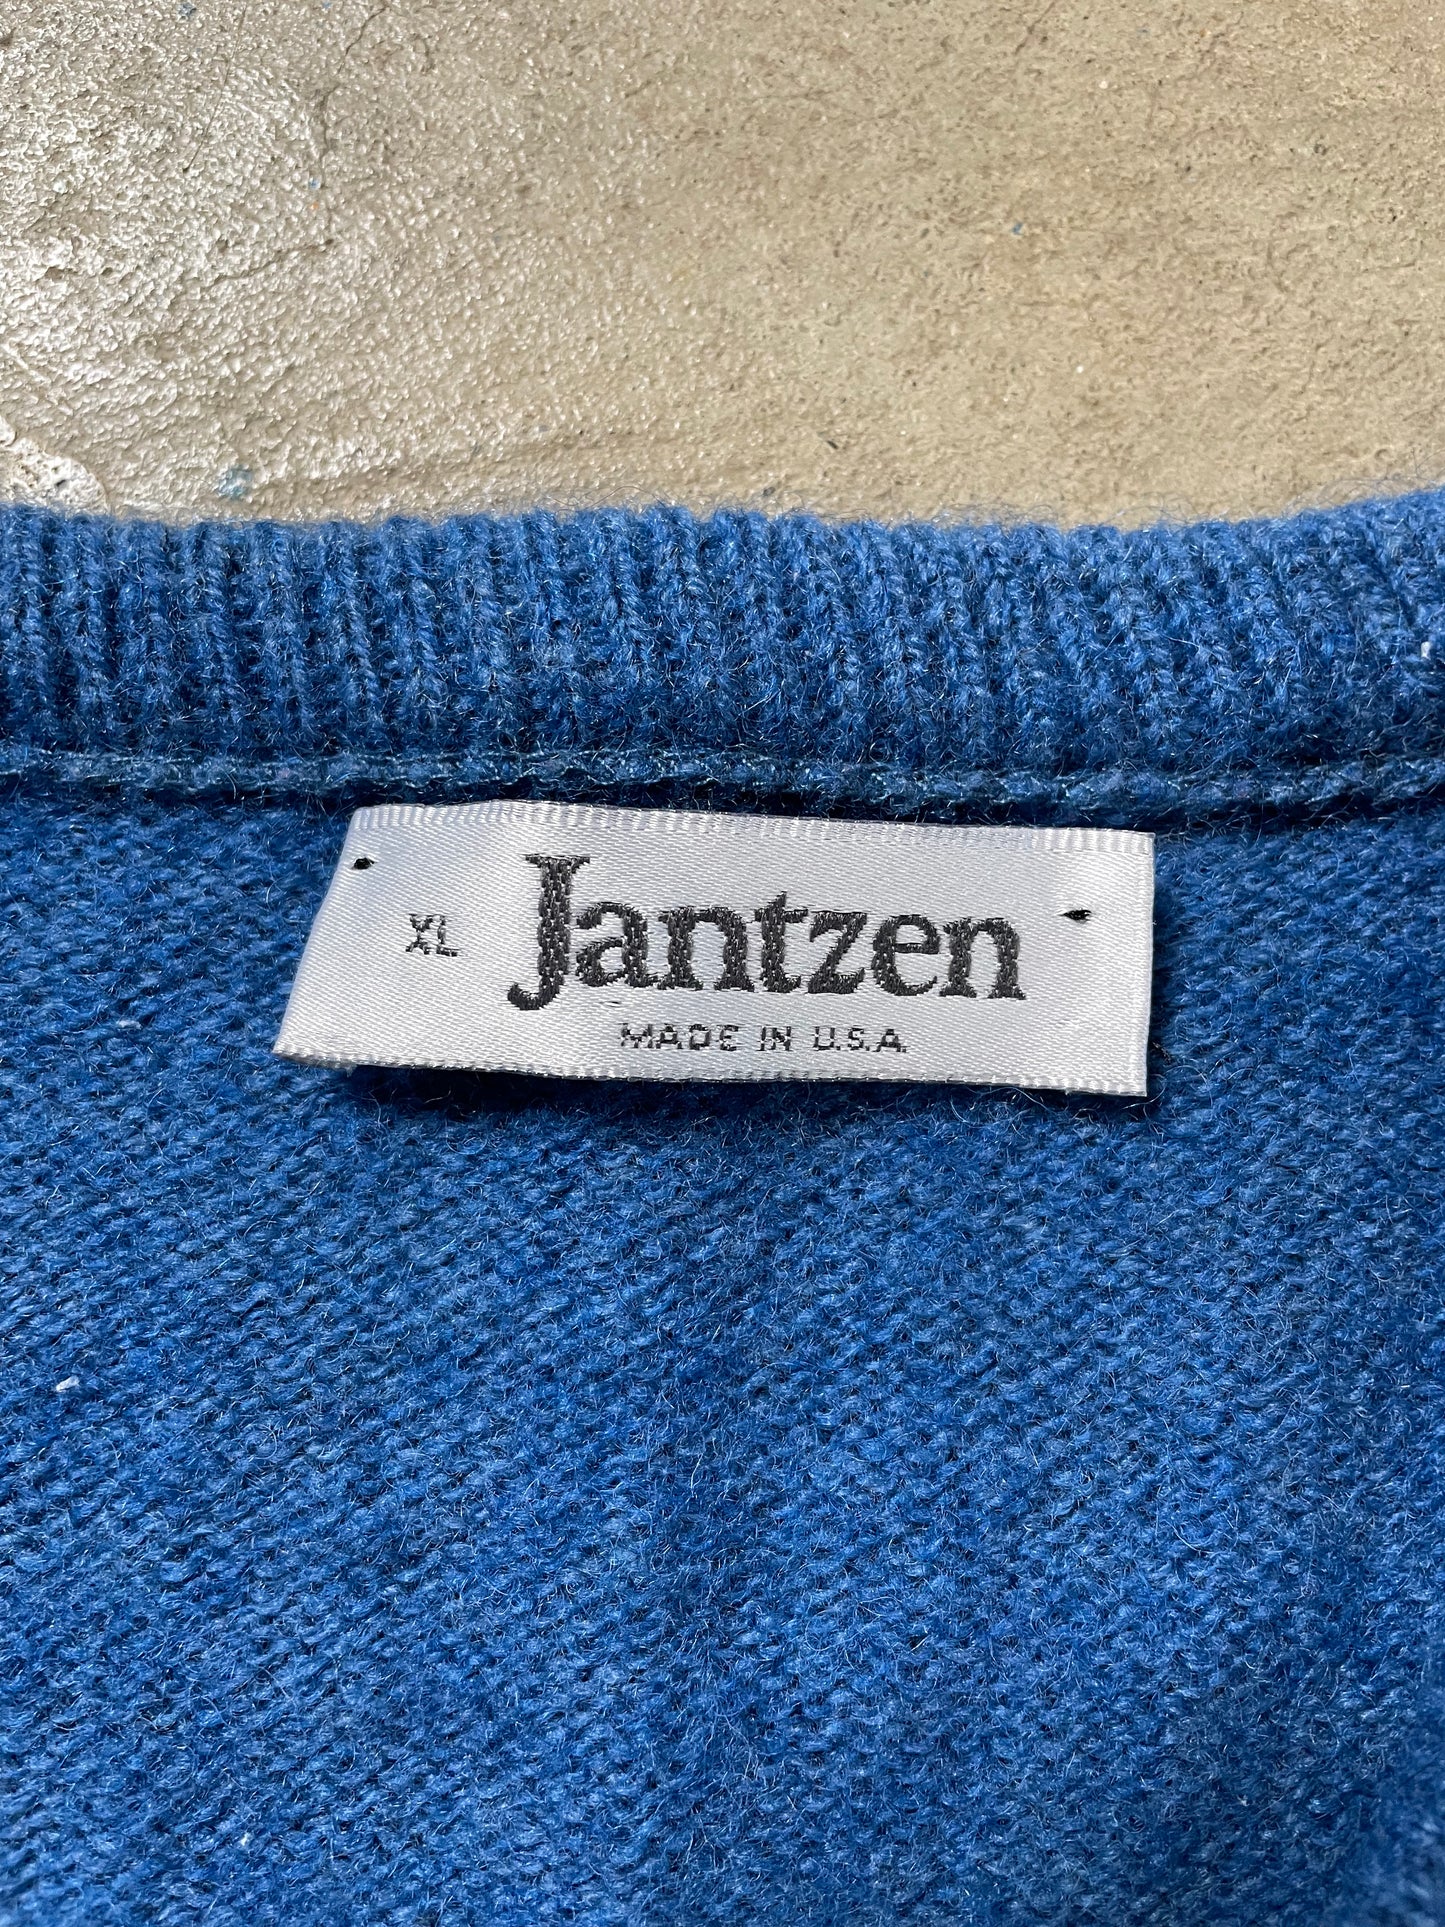 1980s Jantzen V-Neck Sweater